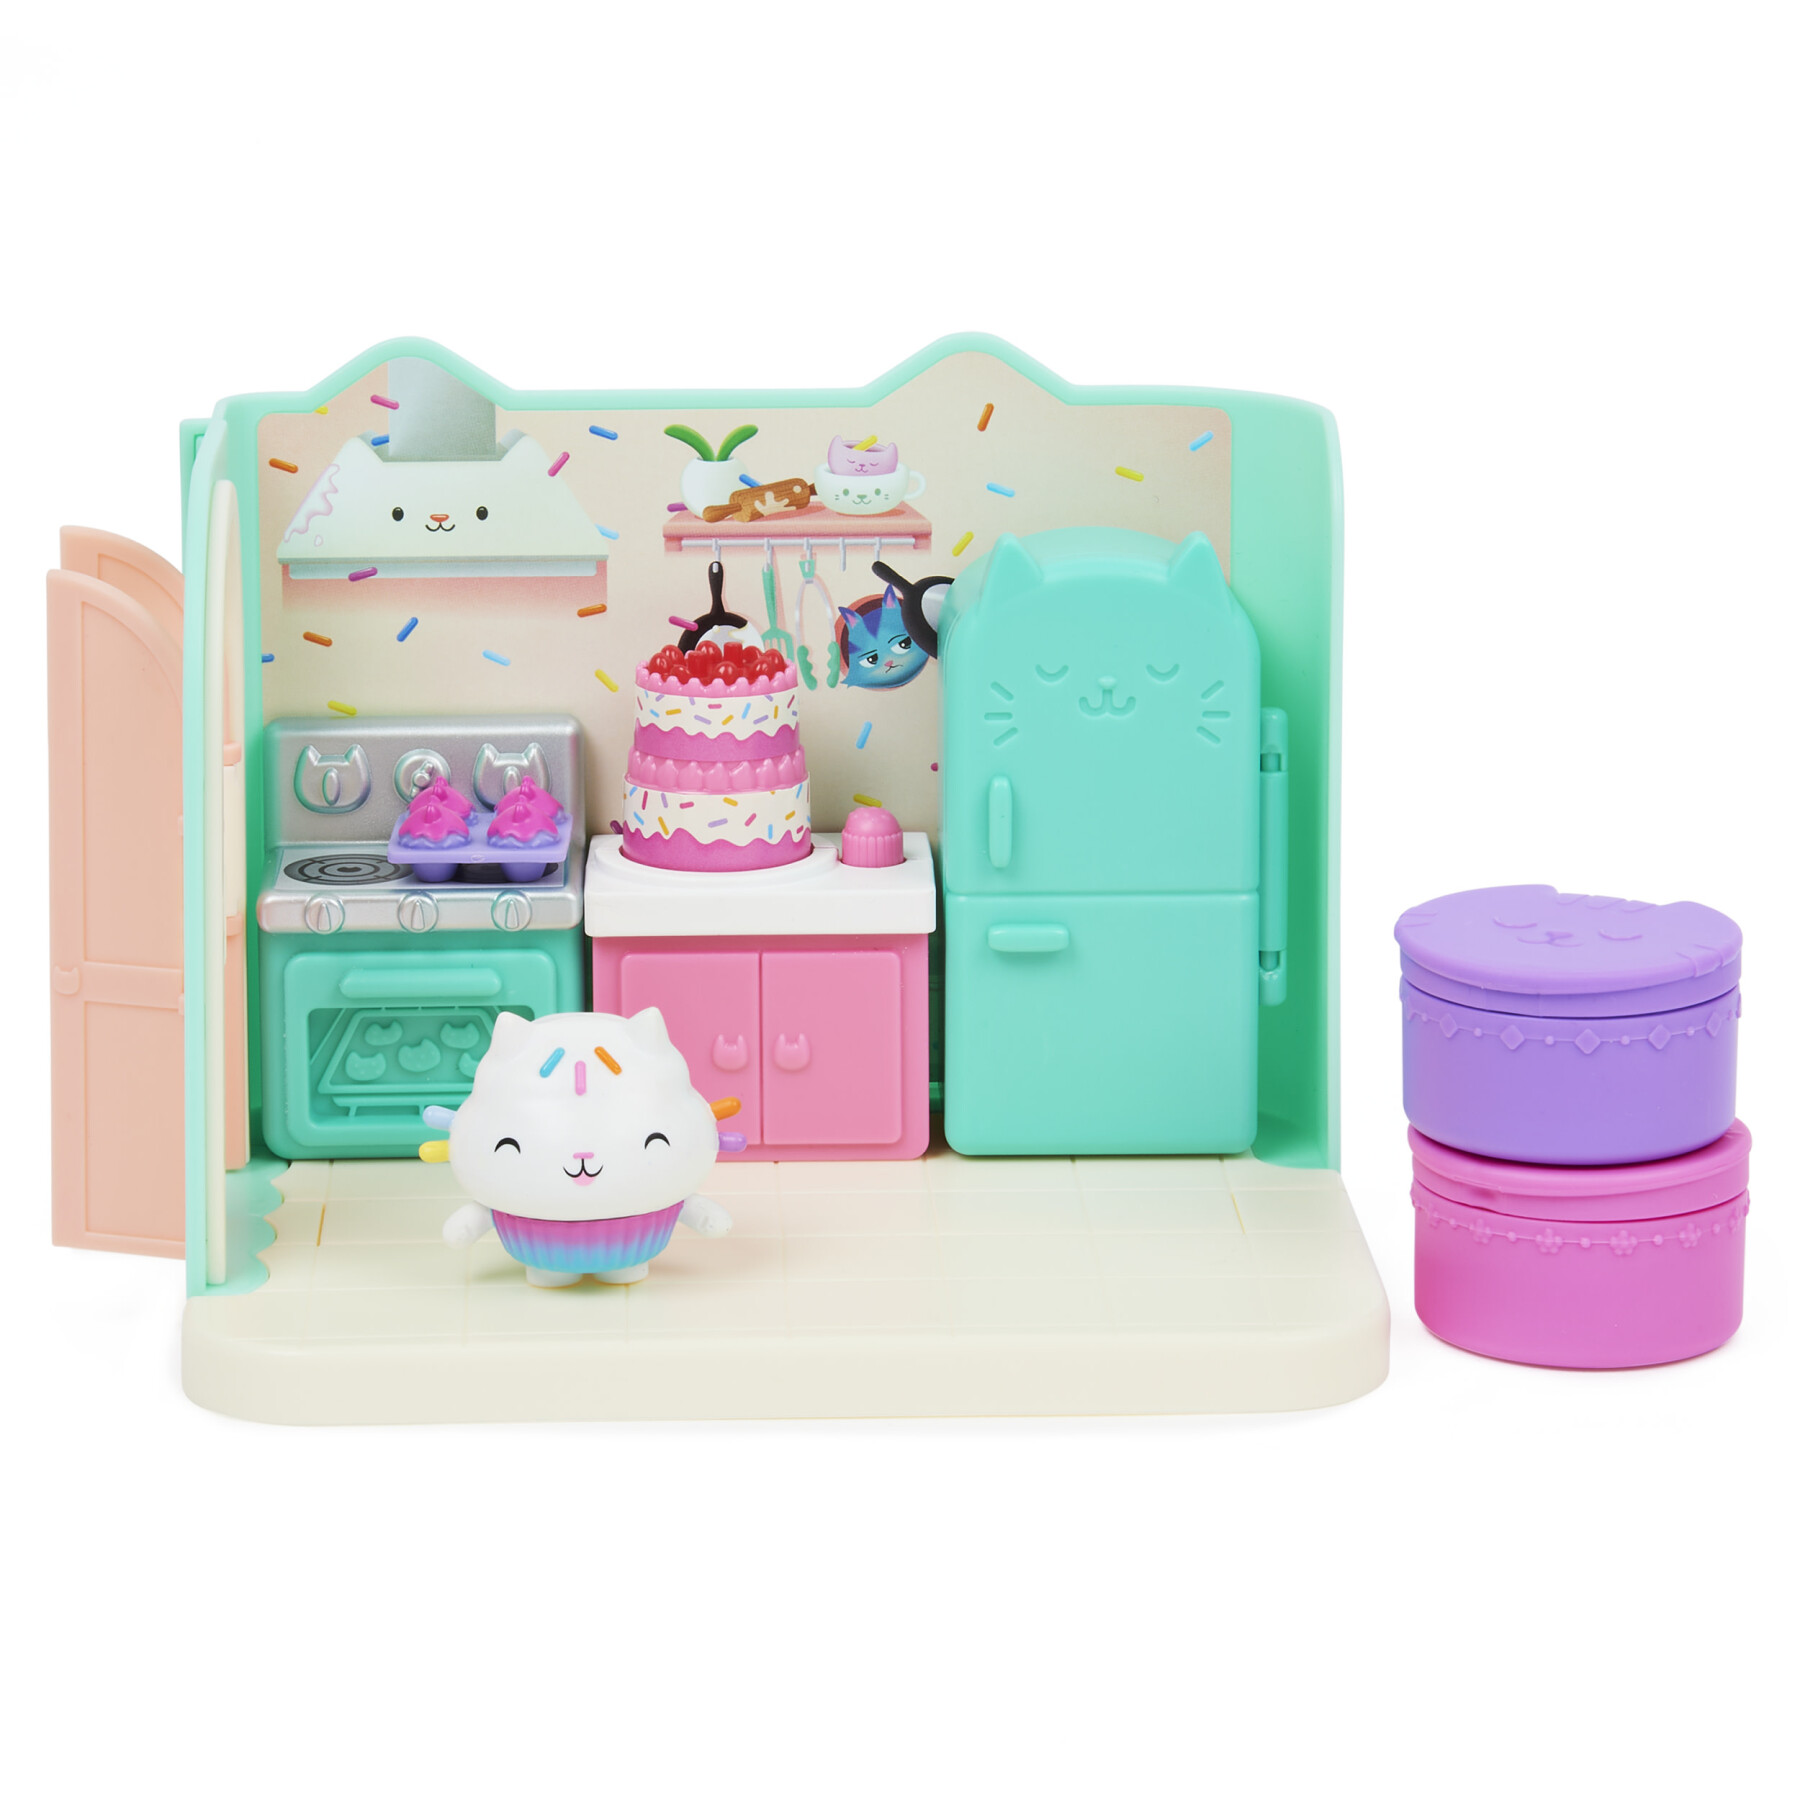 Gabby's dollhouse, la cucina di gattino dolcetto, mini playset stanze della casa, giochi per bambini dai 3 anni in su - GABBY'S DOLLHOUSE